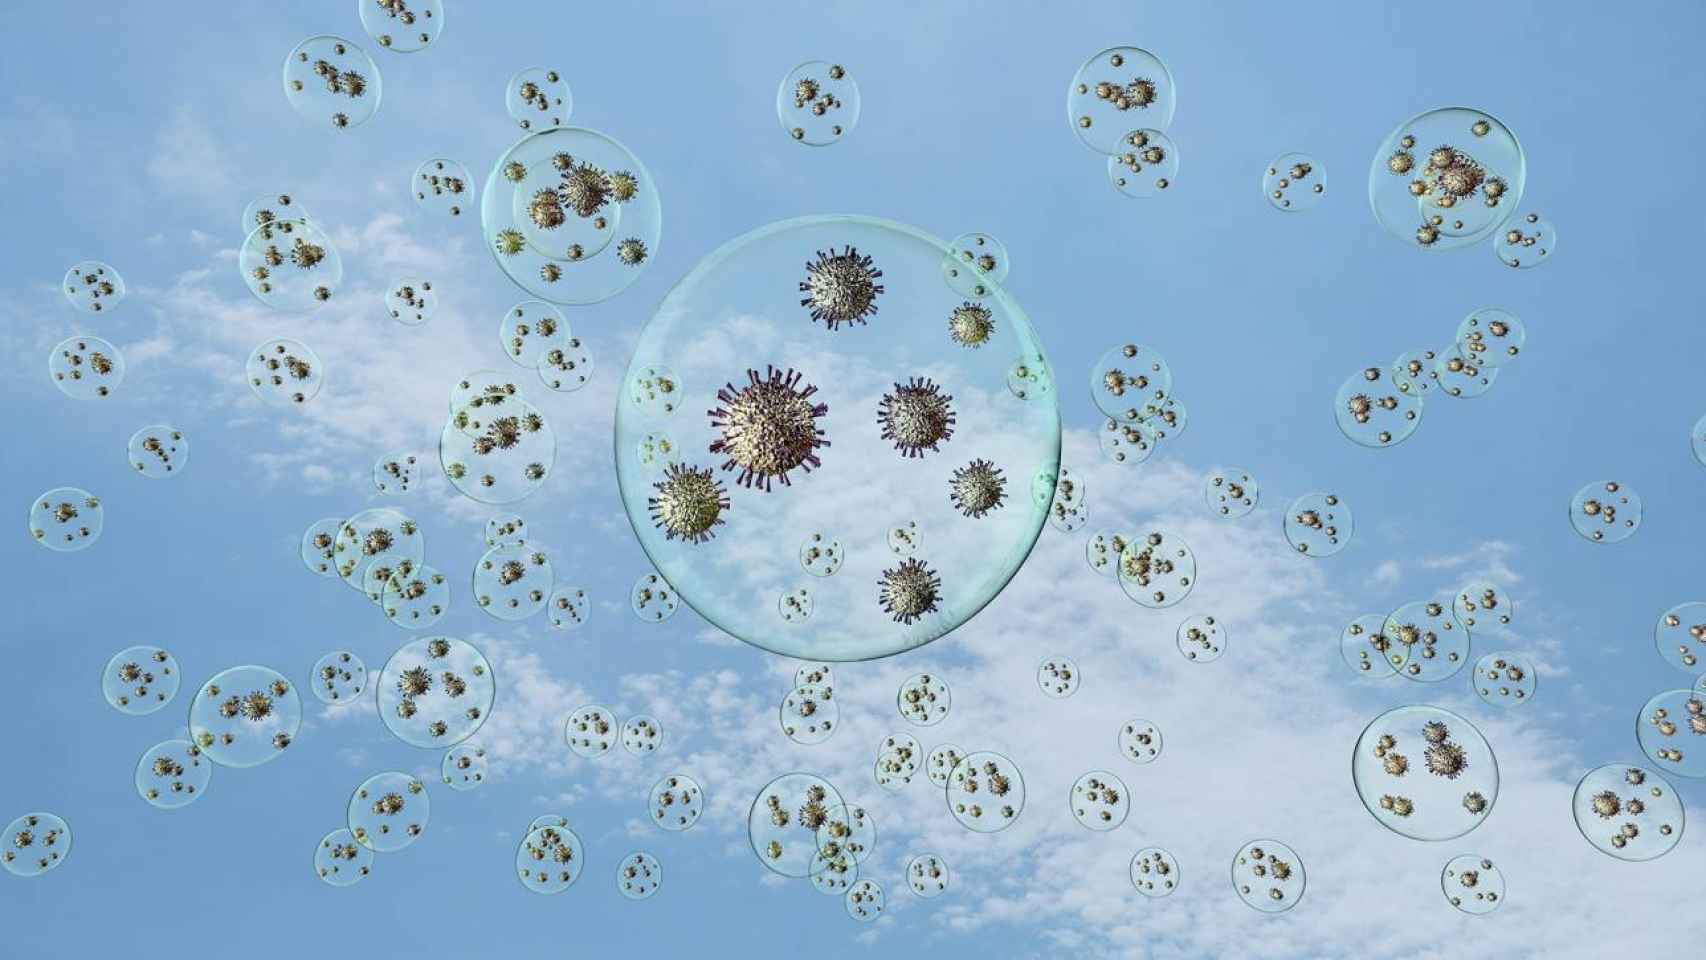 Recreación artística de coronavirus flotando en el aire dentro de gotitas, exagerando mucho el tamaño de los virus respecto al de las gotitas. En la realidad son mucho más pequeños. / Adobe Stock